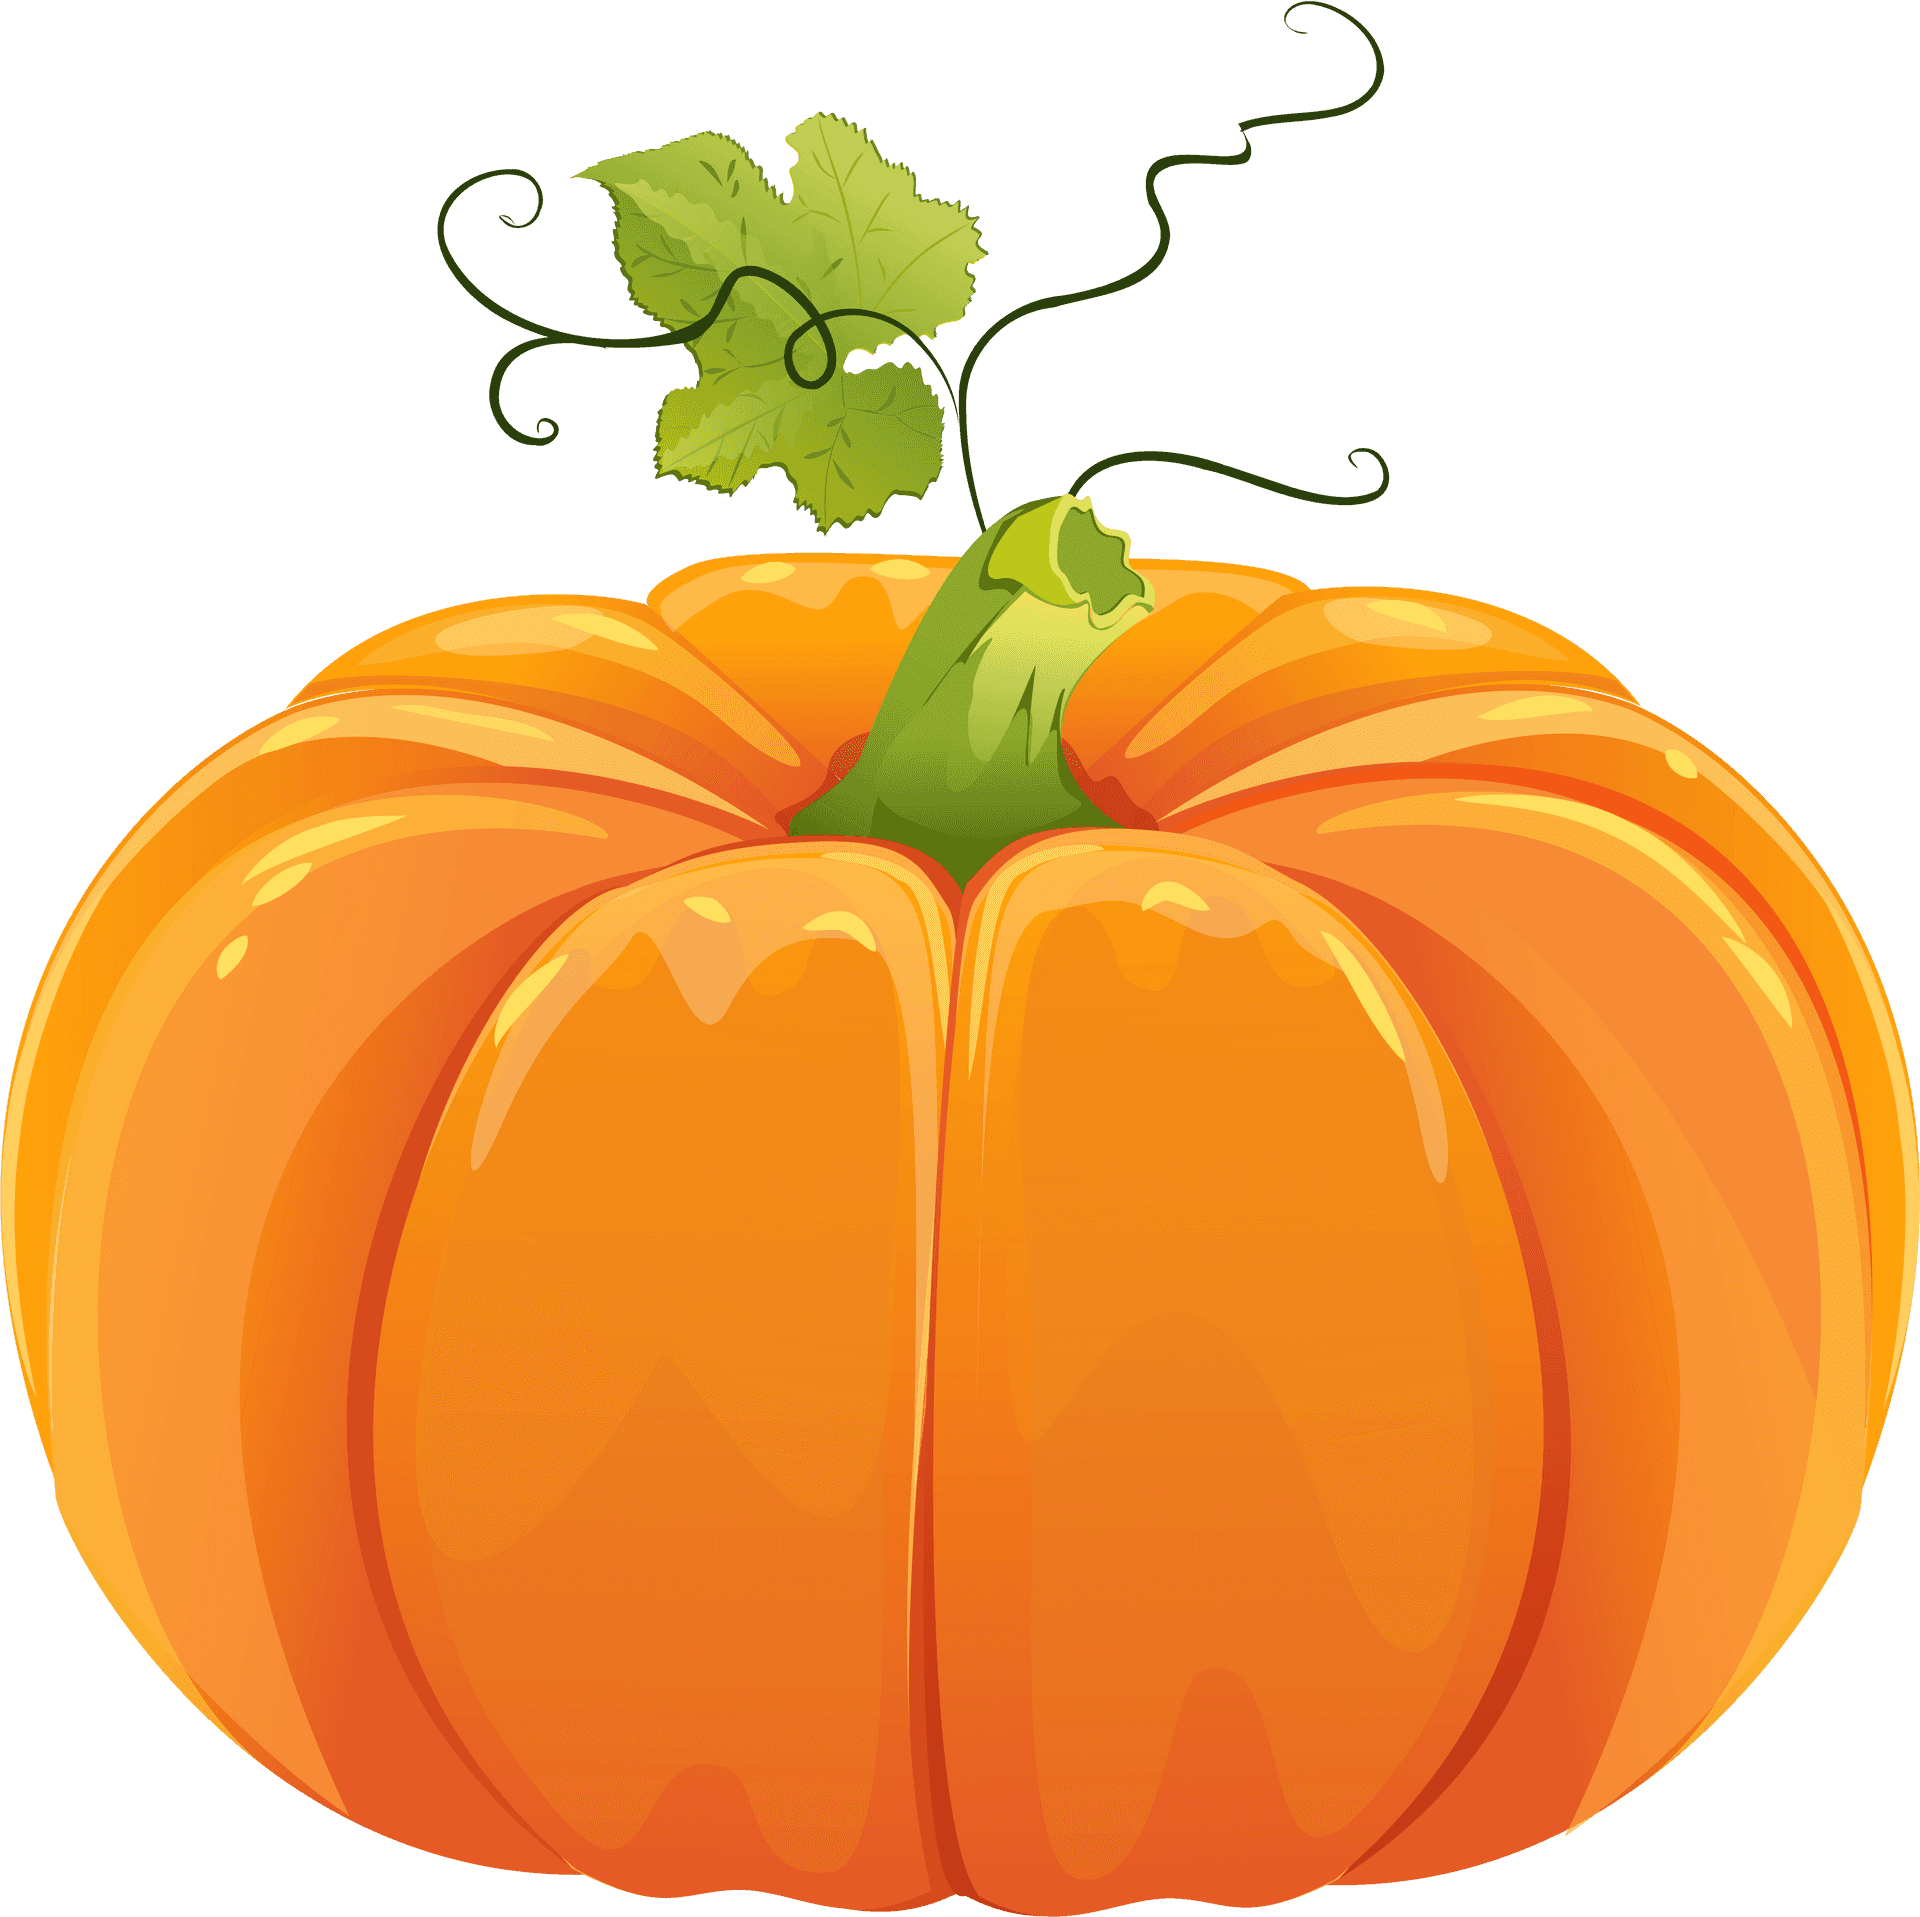 Vibrant Orange Pumpkin Illustration PNG image